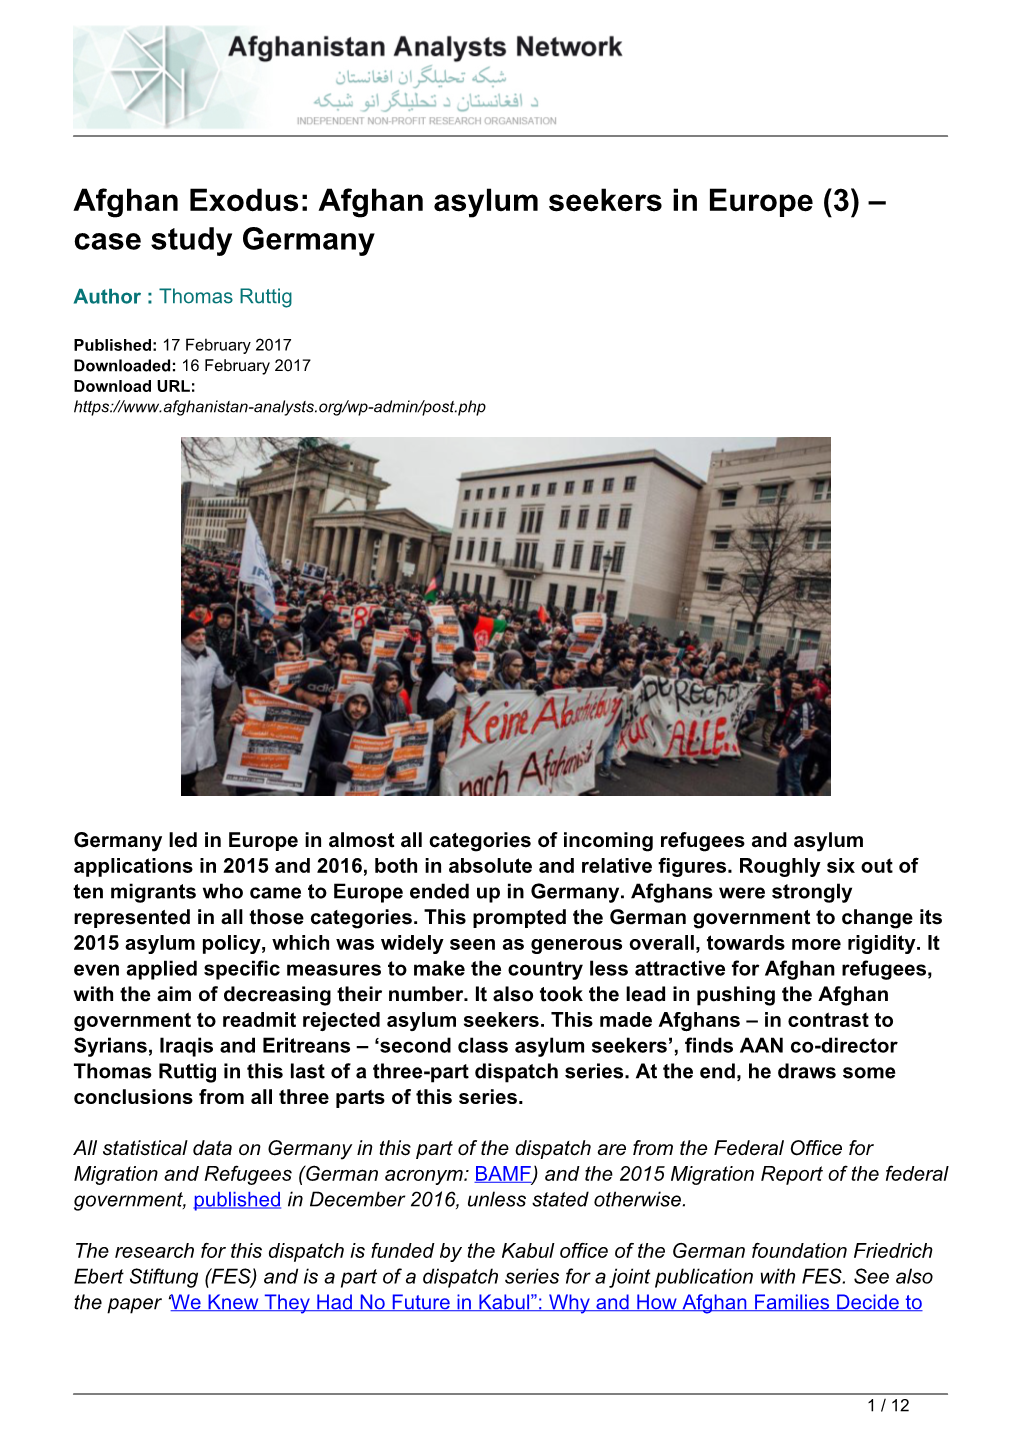 Afghan Asylum Seekers in Europe (3) – Case Study Germany